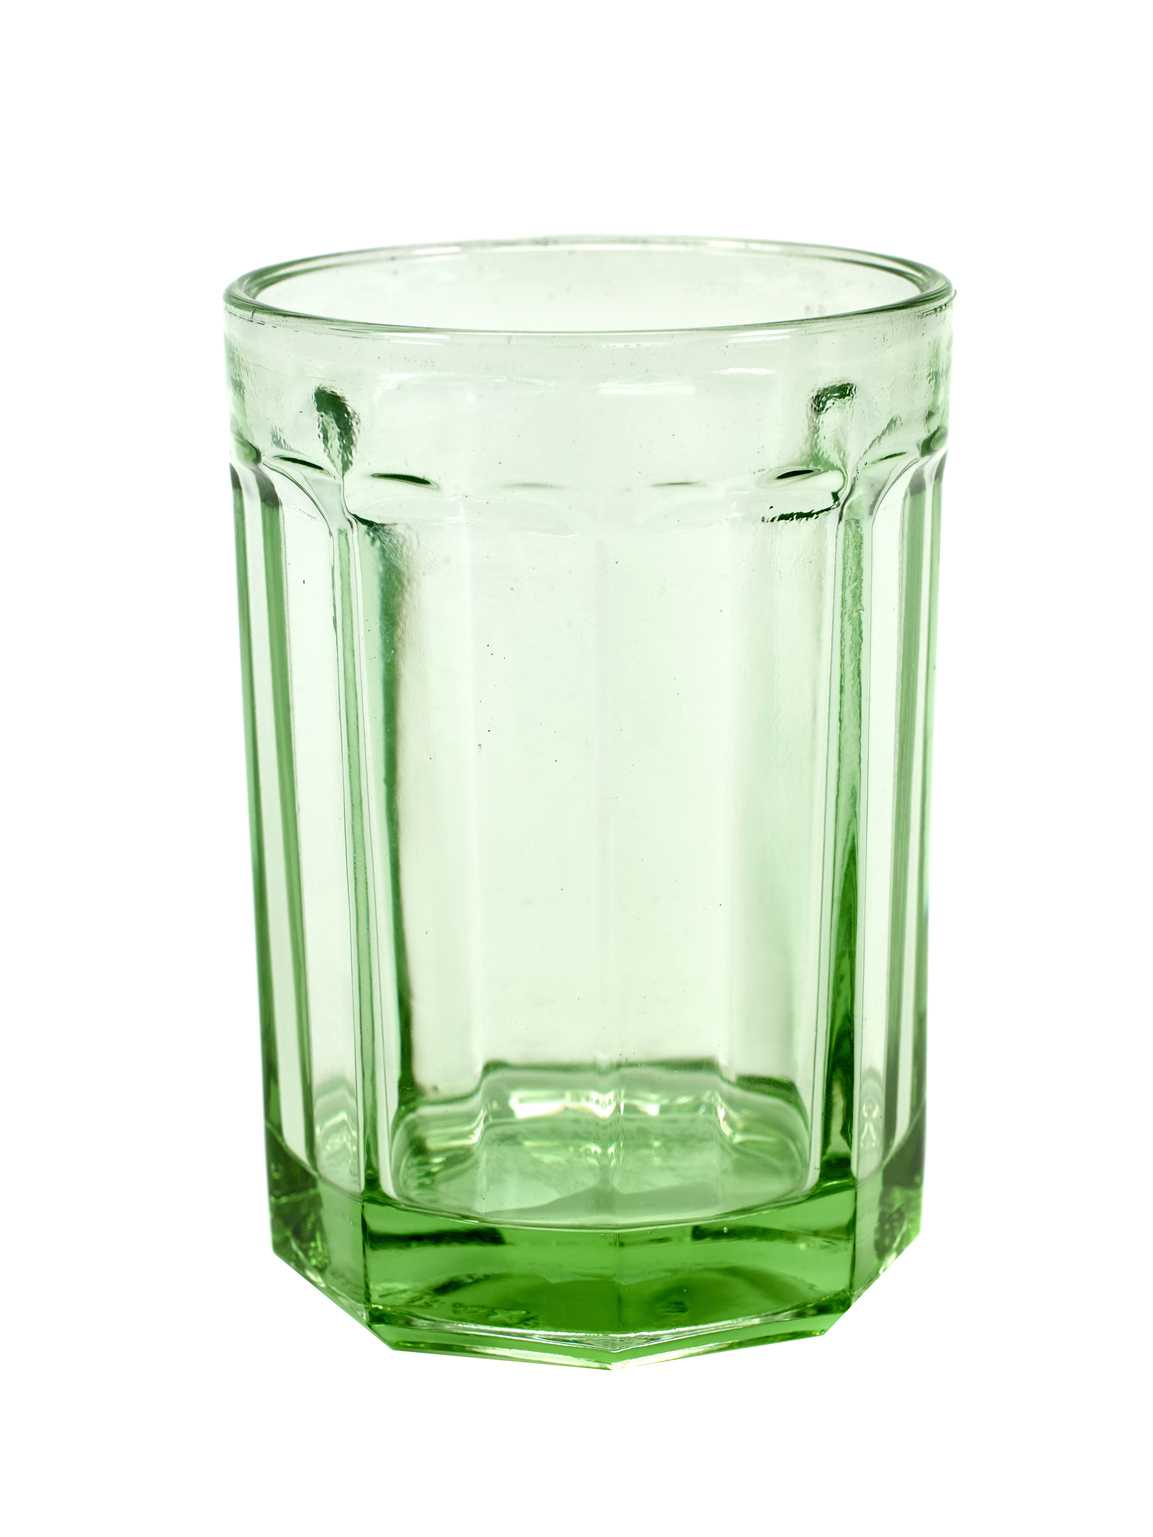 Serax Glass L Transparent Green - Fish & Fish